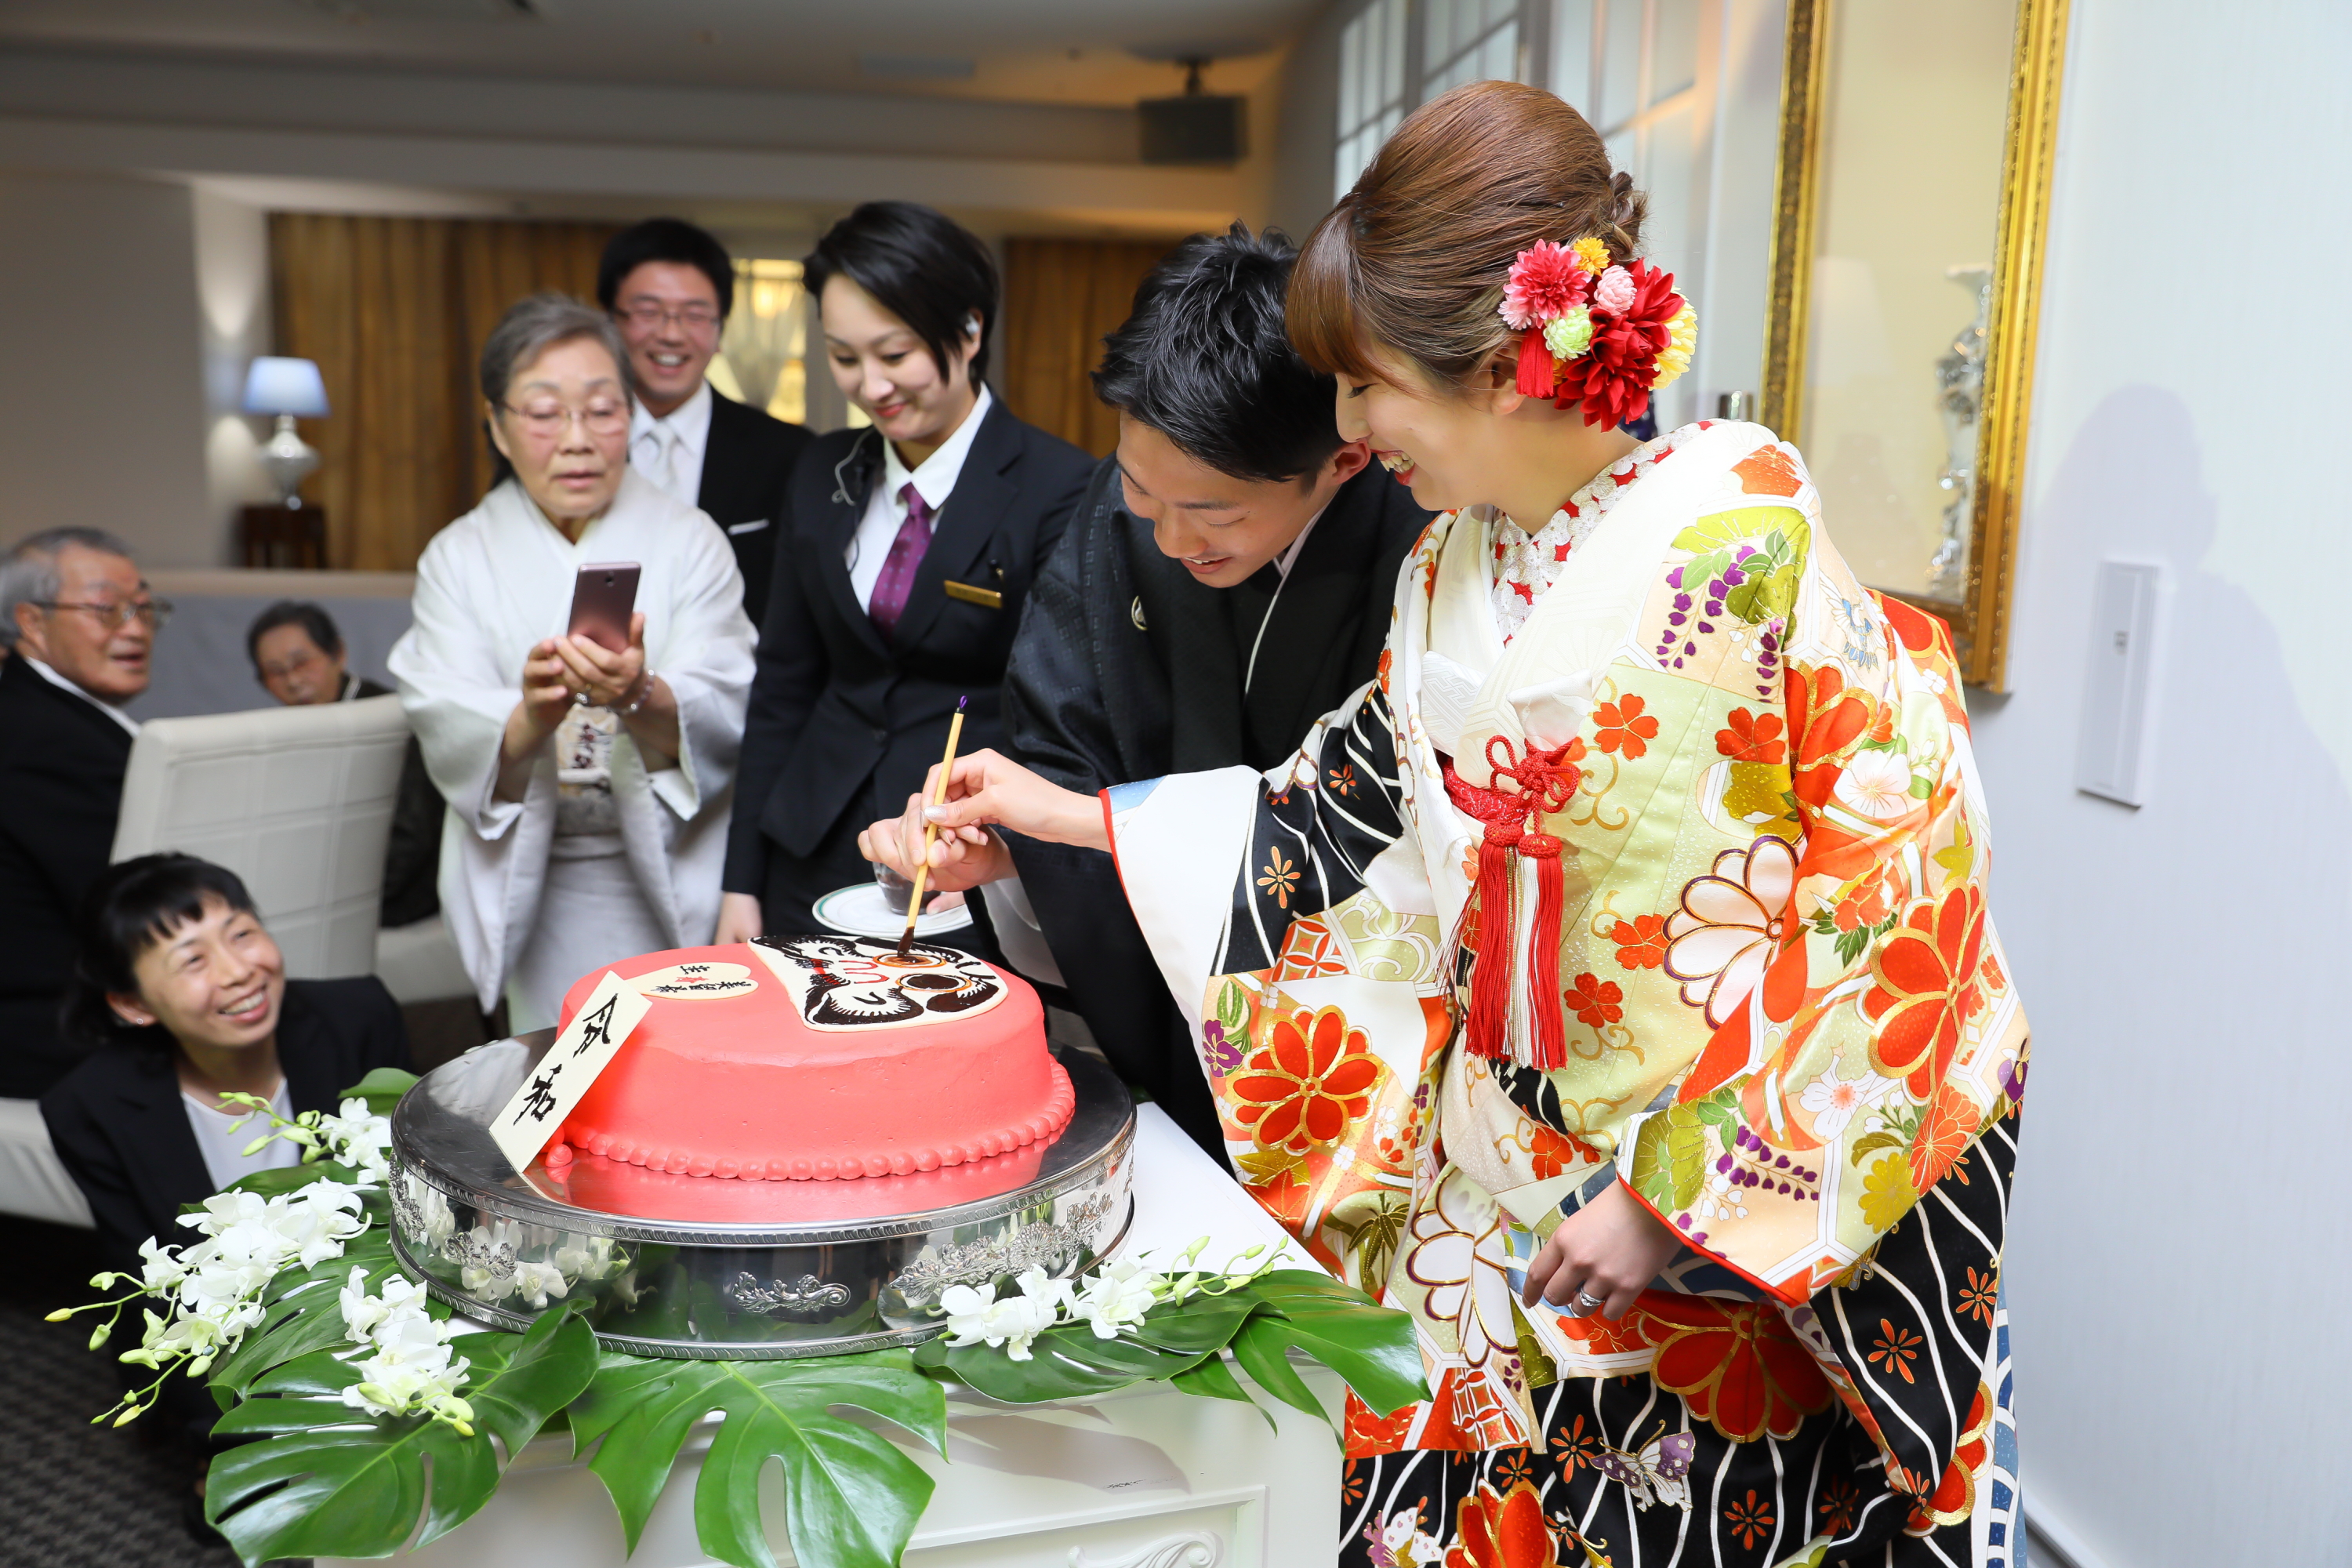 和装 でのちょっと変わったケーキ演出 マリエール太田 群馬県太田市の結婚式場 披露宴会場 挙式